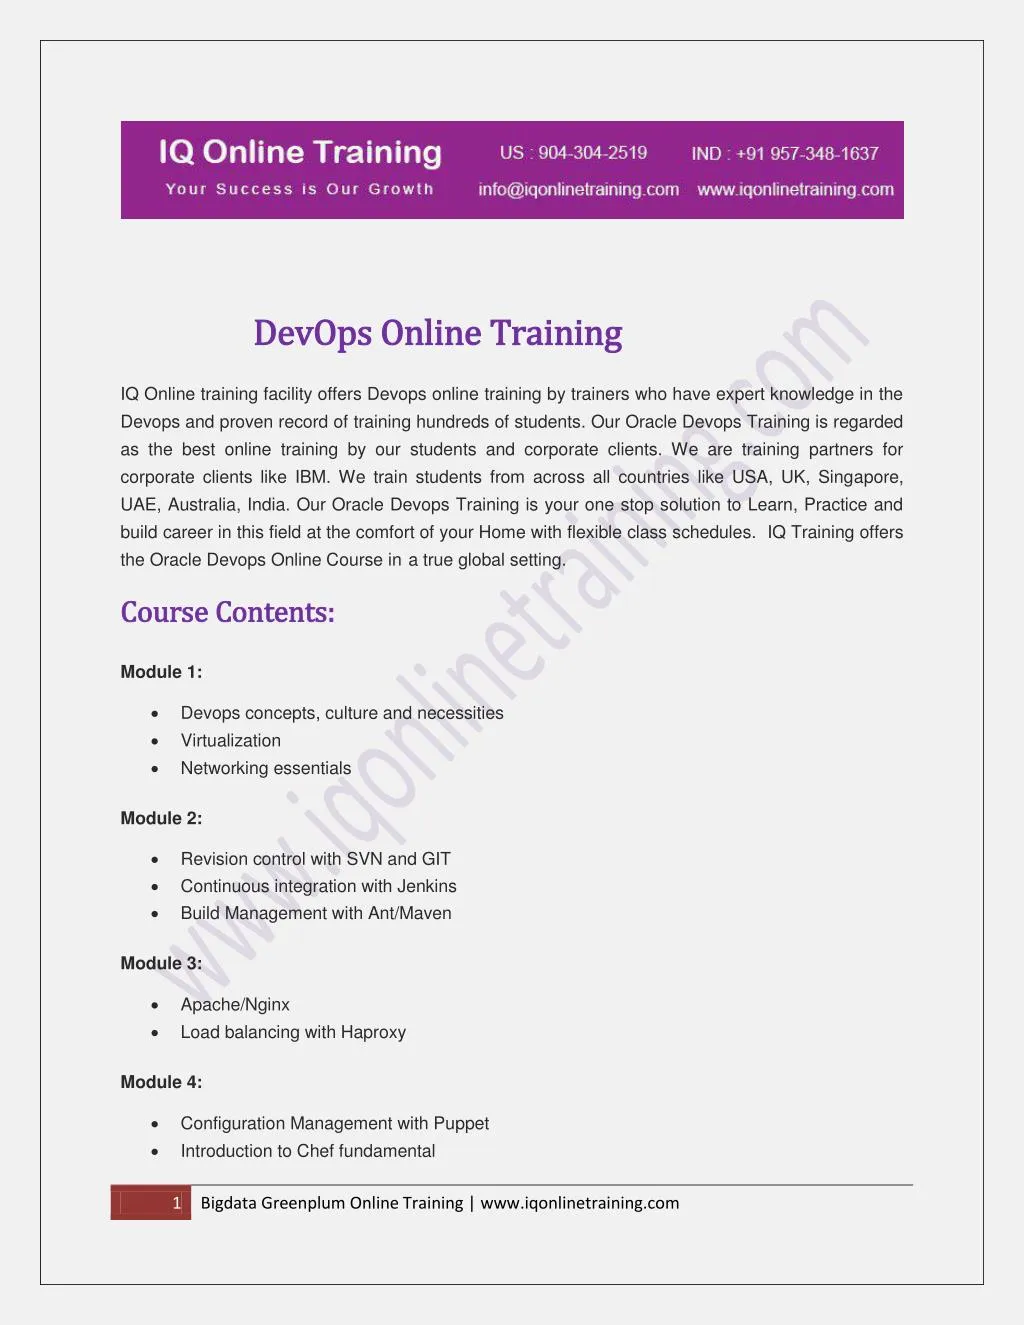 devops online training devops online training